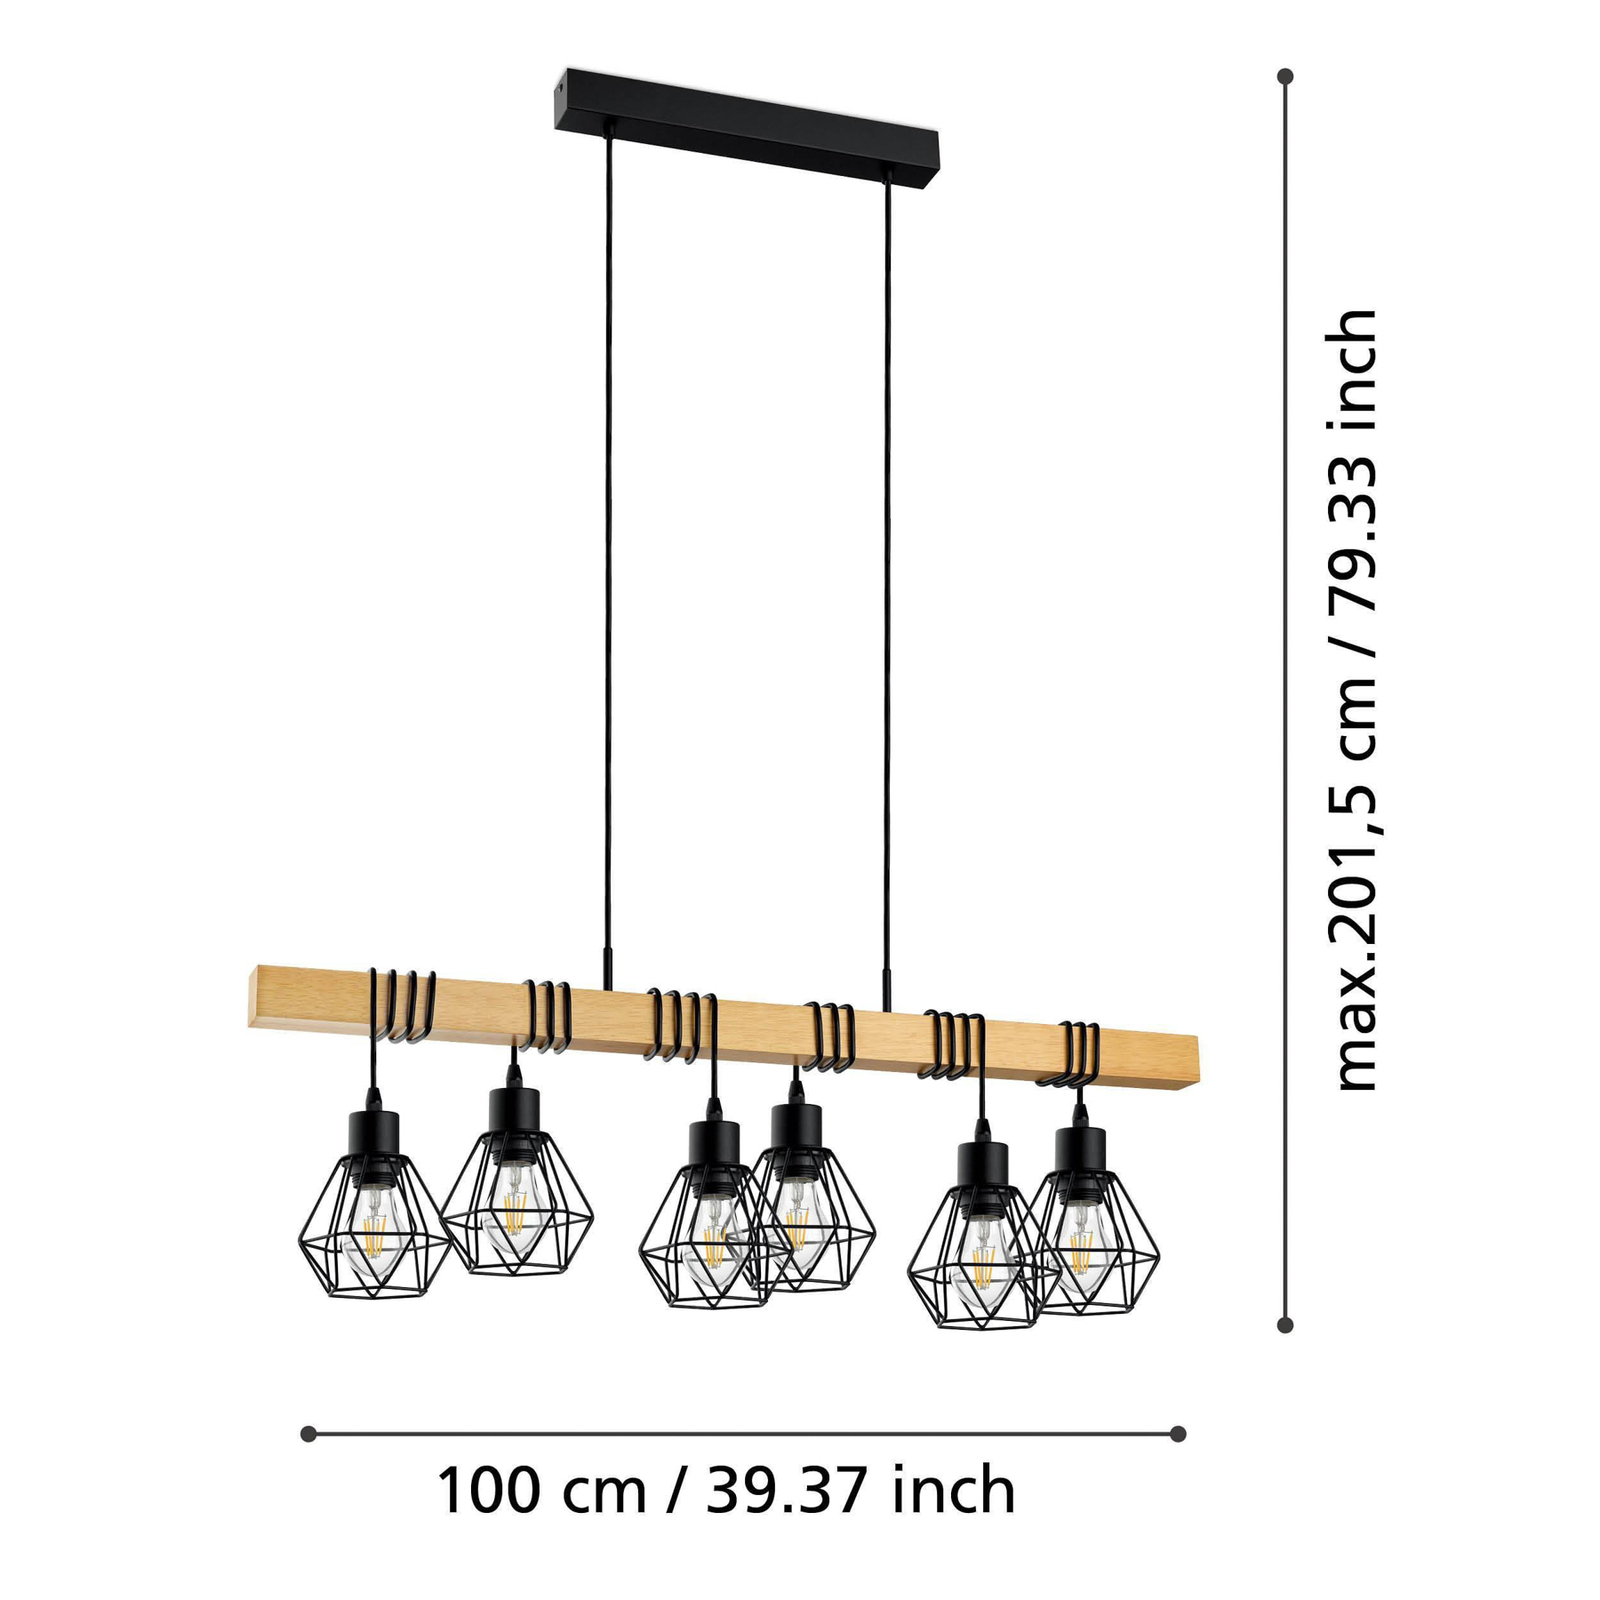 Lampa wisząca Townshend, długość 100 cm, czarny/dąb, 6-punktowa.